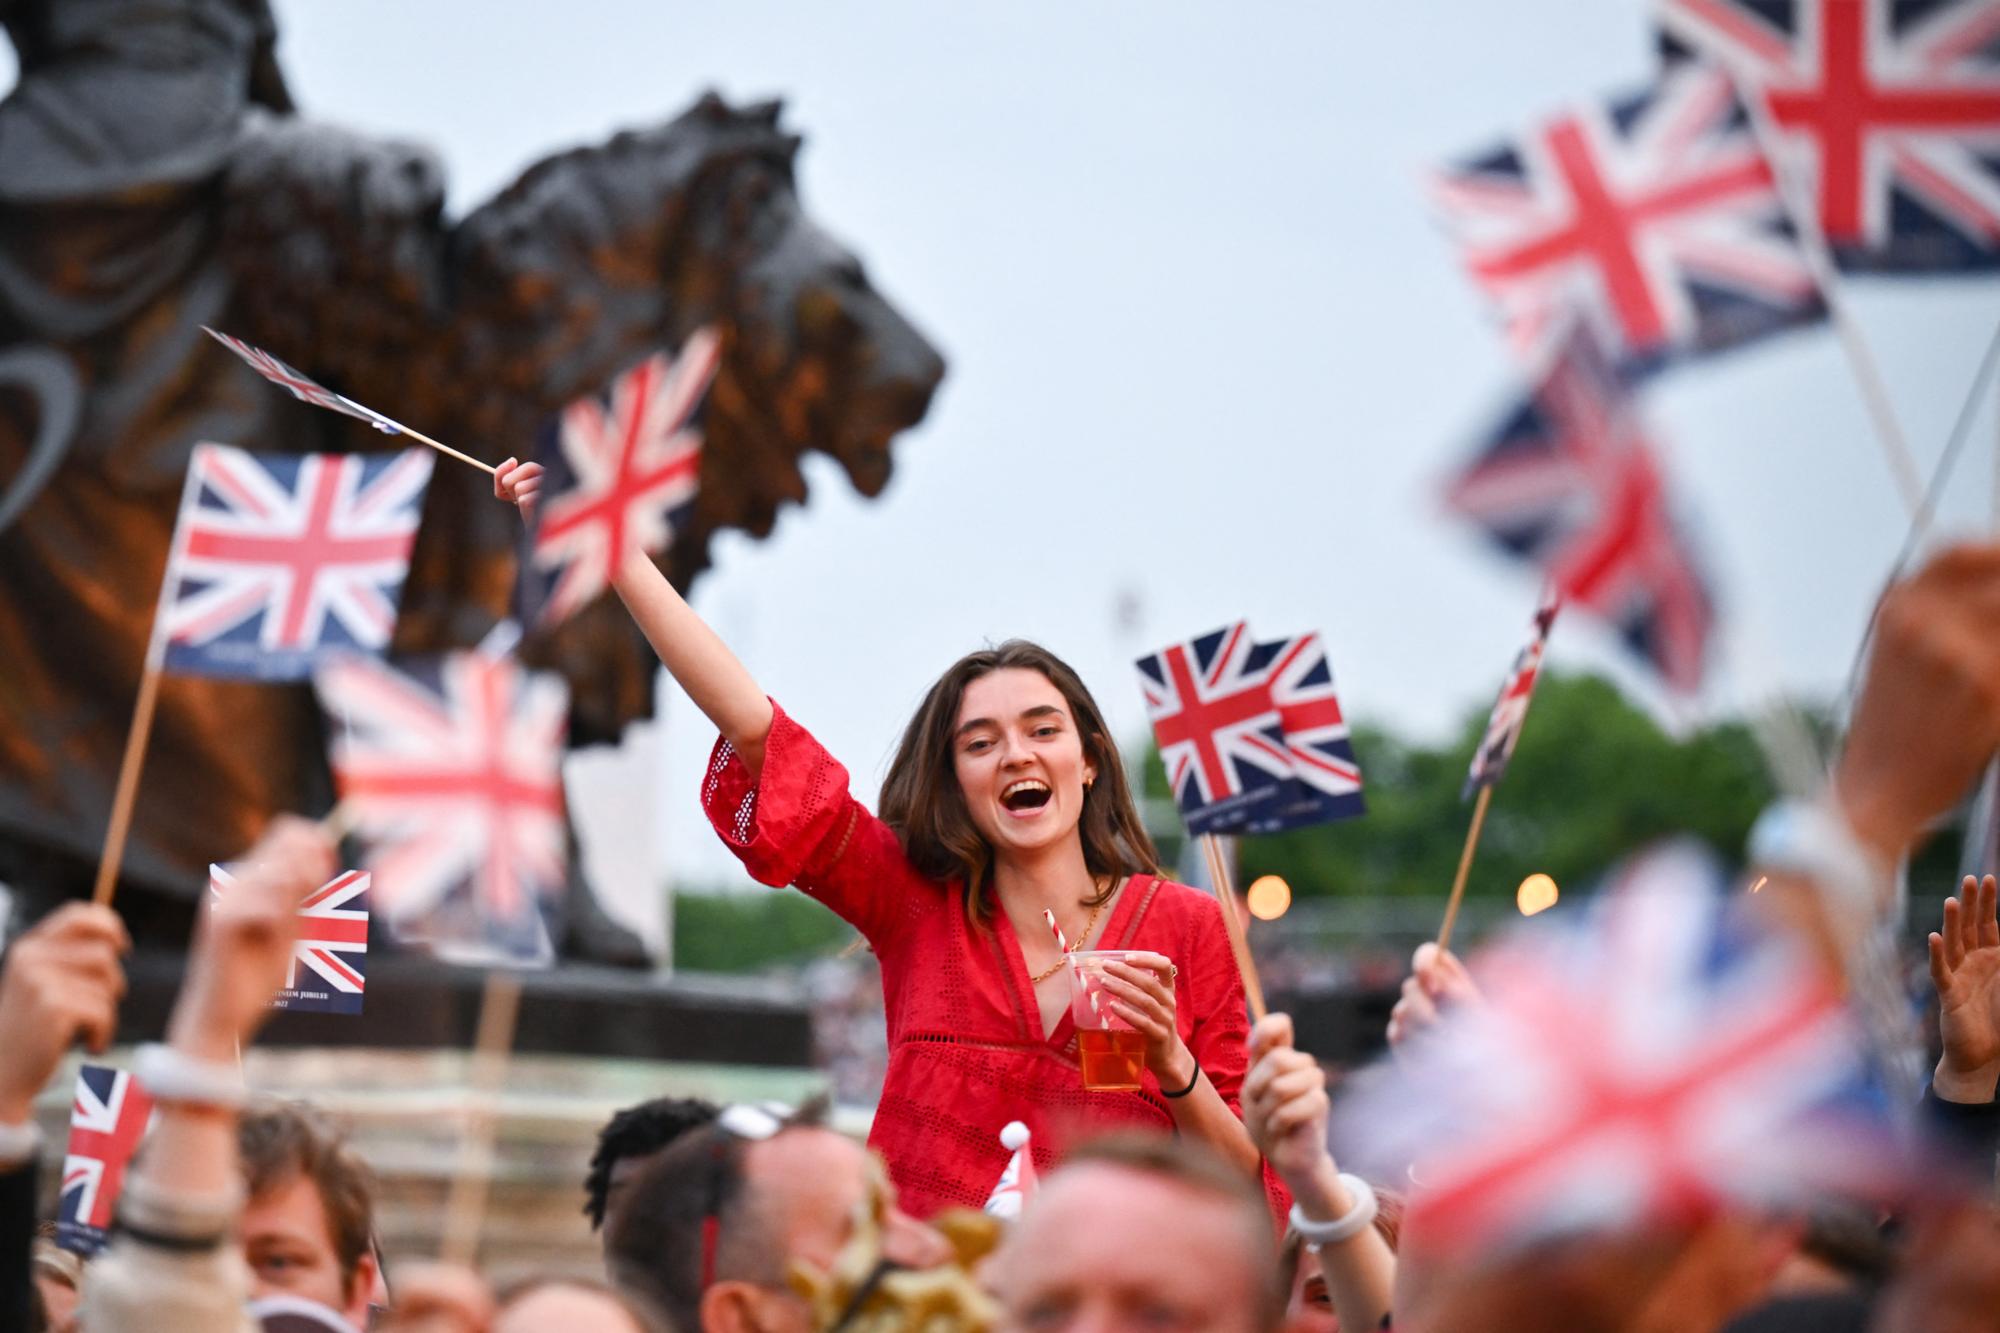 Le public en liesse lors du concert géant devant le palace de Buckingham, le 4 juin 2022. [AFP - Jeff J Mitchell]